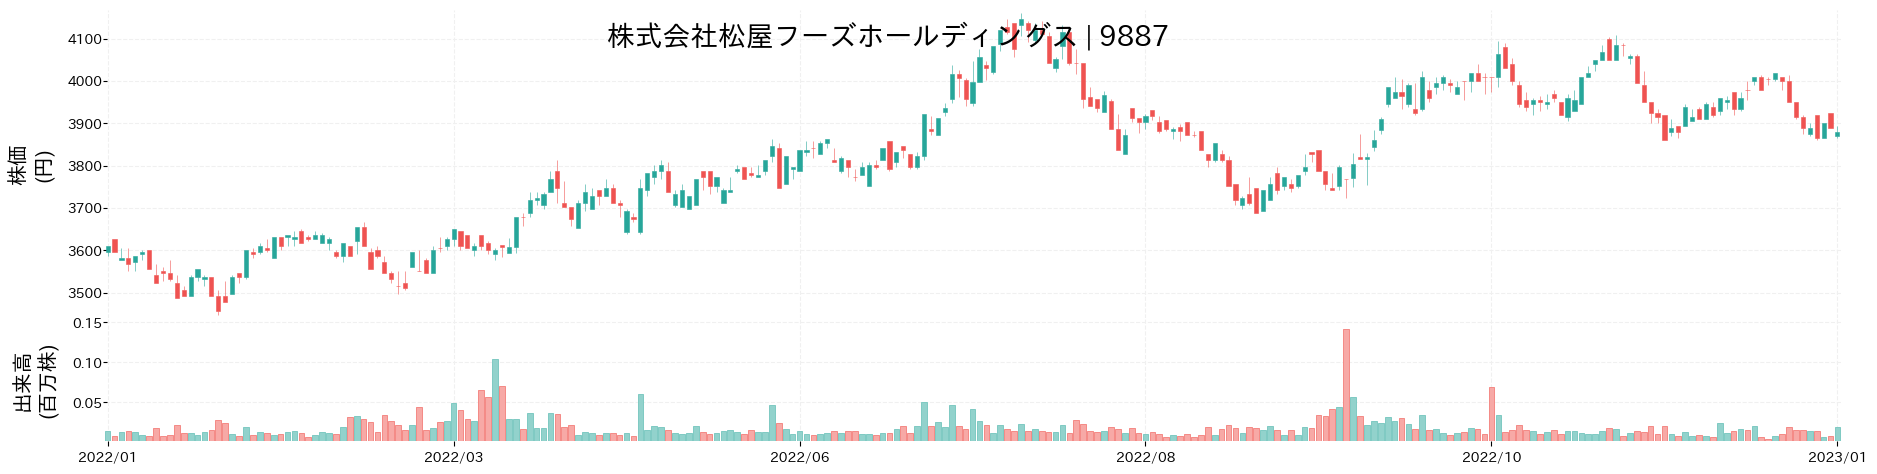 松屋フーズホールディングスの株価推移(2022)